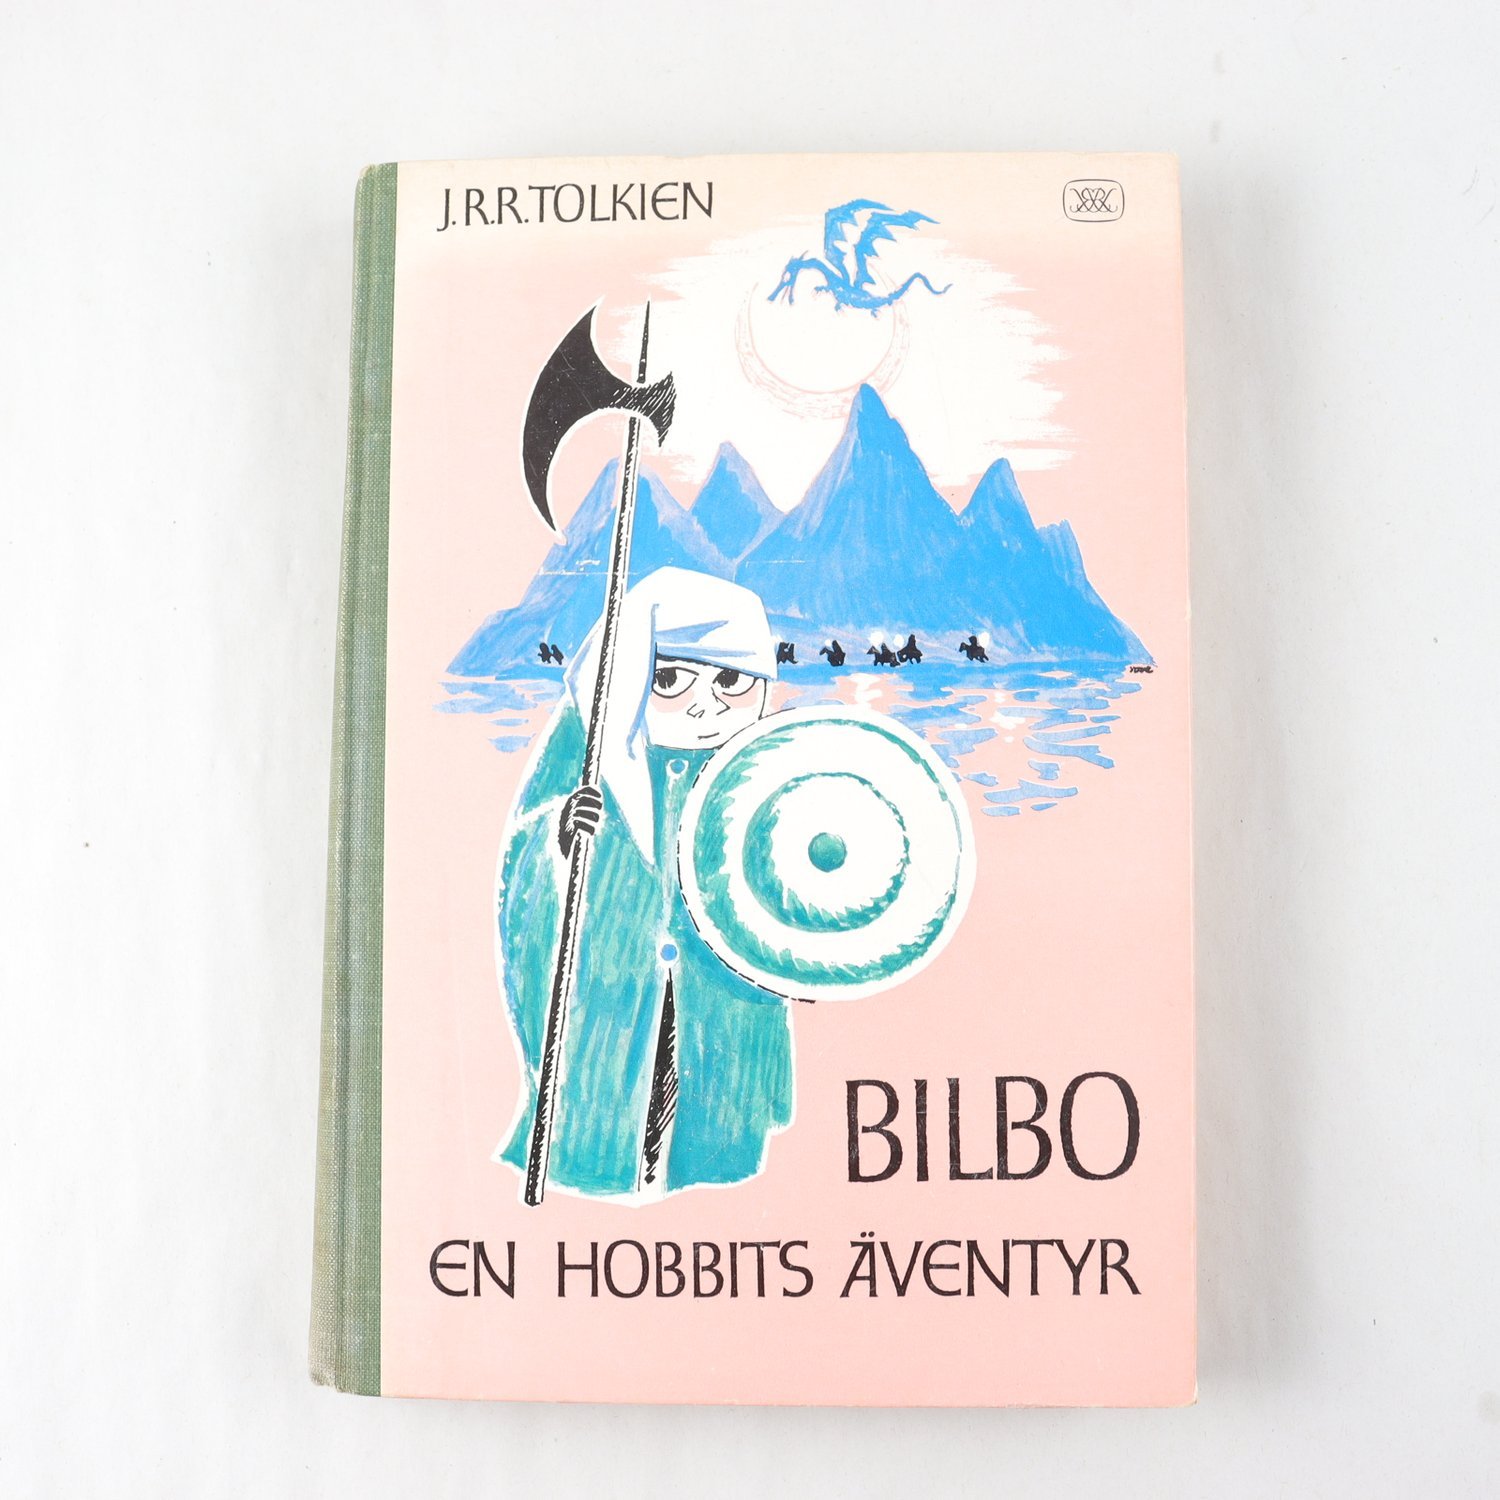 J.R.R. Tolkien, Bilbo: En hobbits äventyr, (ill: Tove Jansson) (1962)